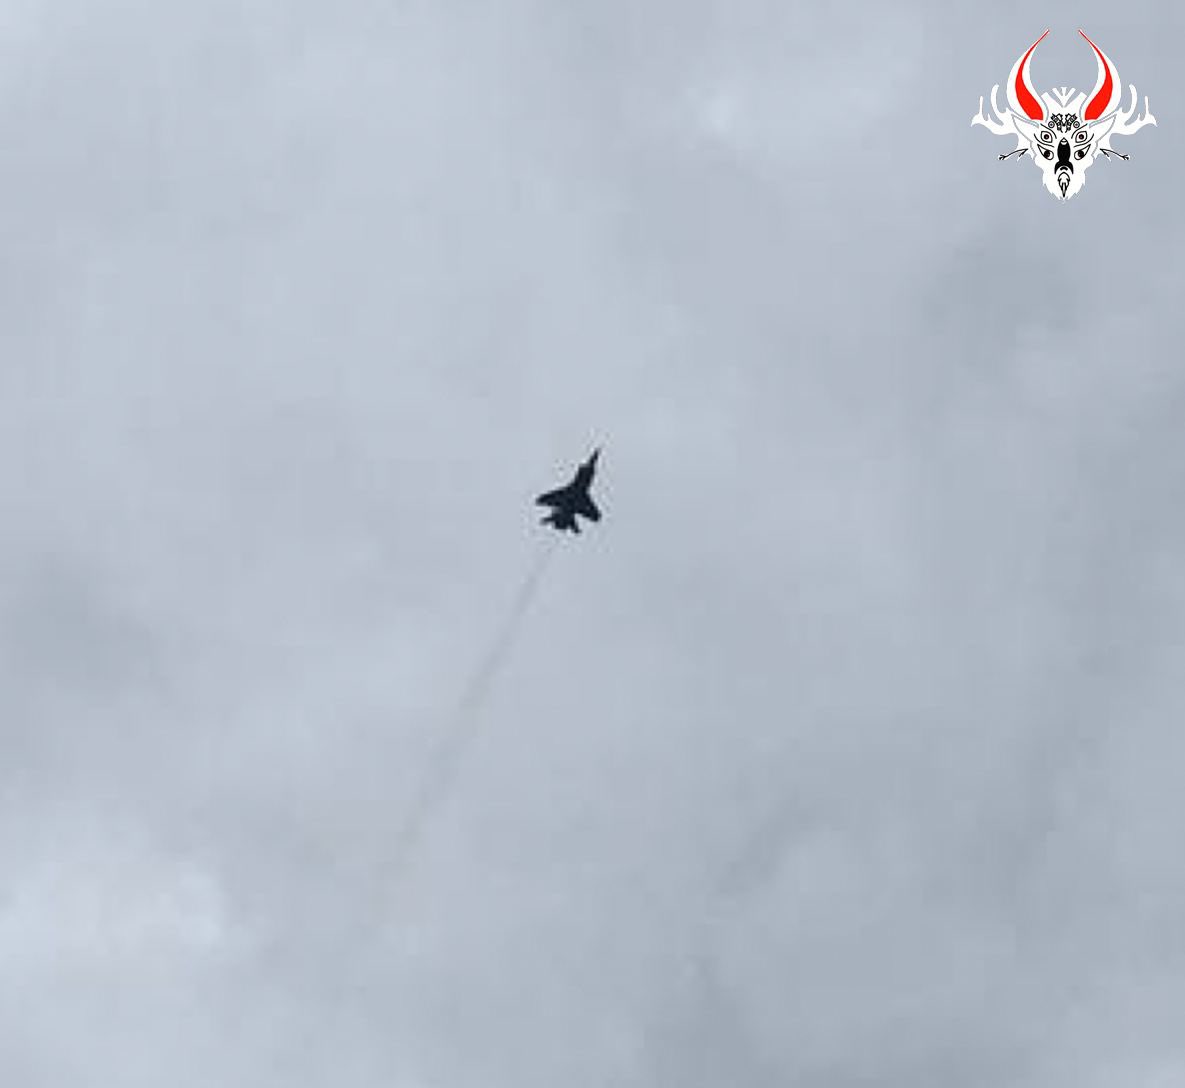 تم رصد 3-4 مقاتلات من طراز MiG-31 (فارغة بدون صواريخ) فوق مينسك في الدقائق الثلاثين الماضية